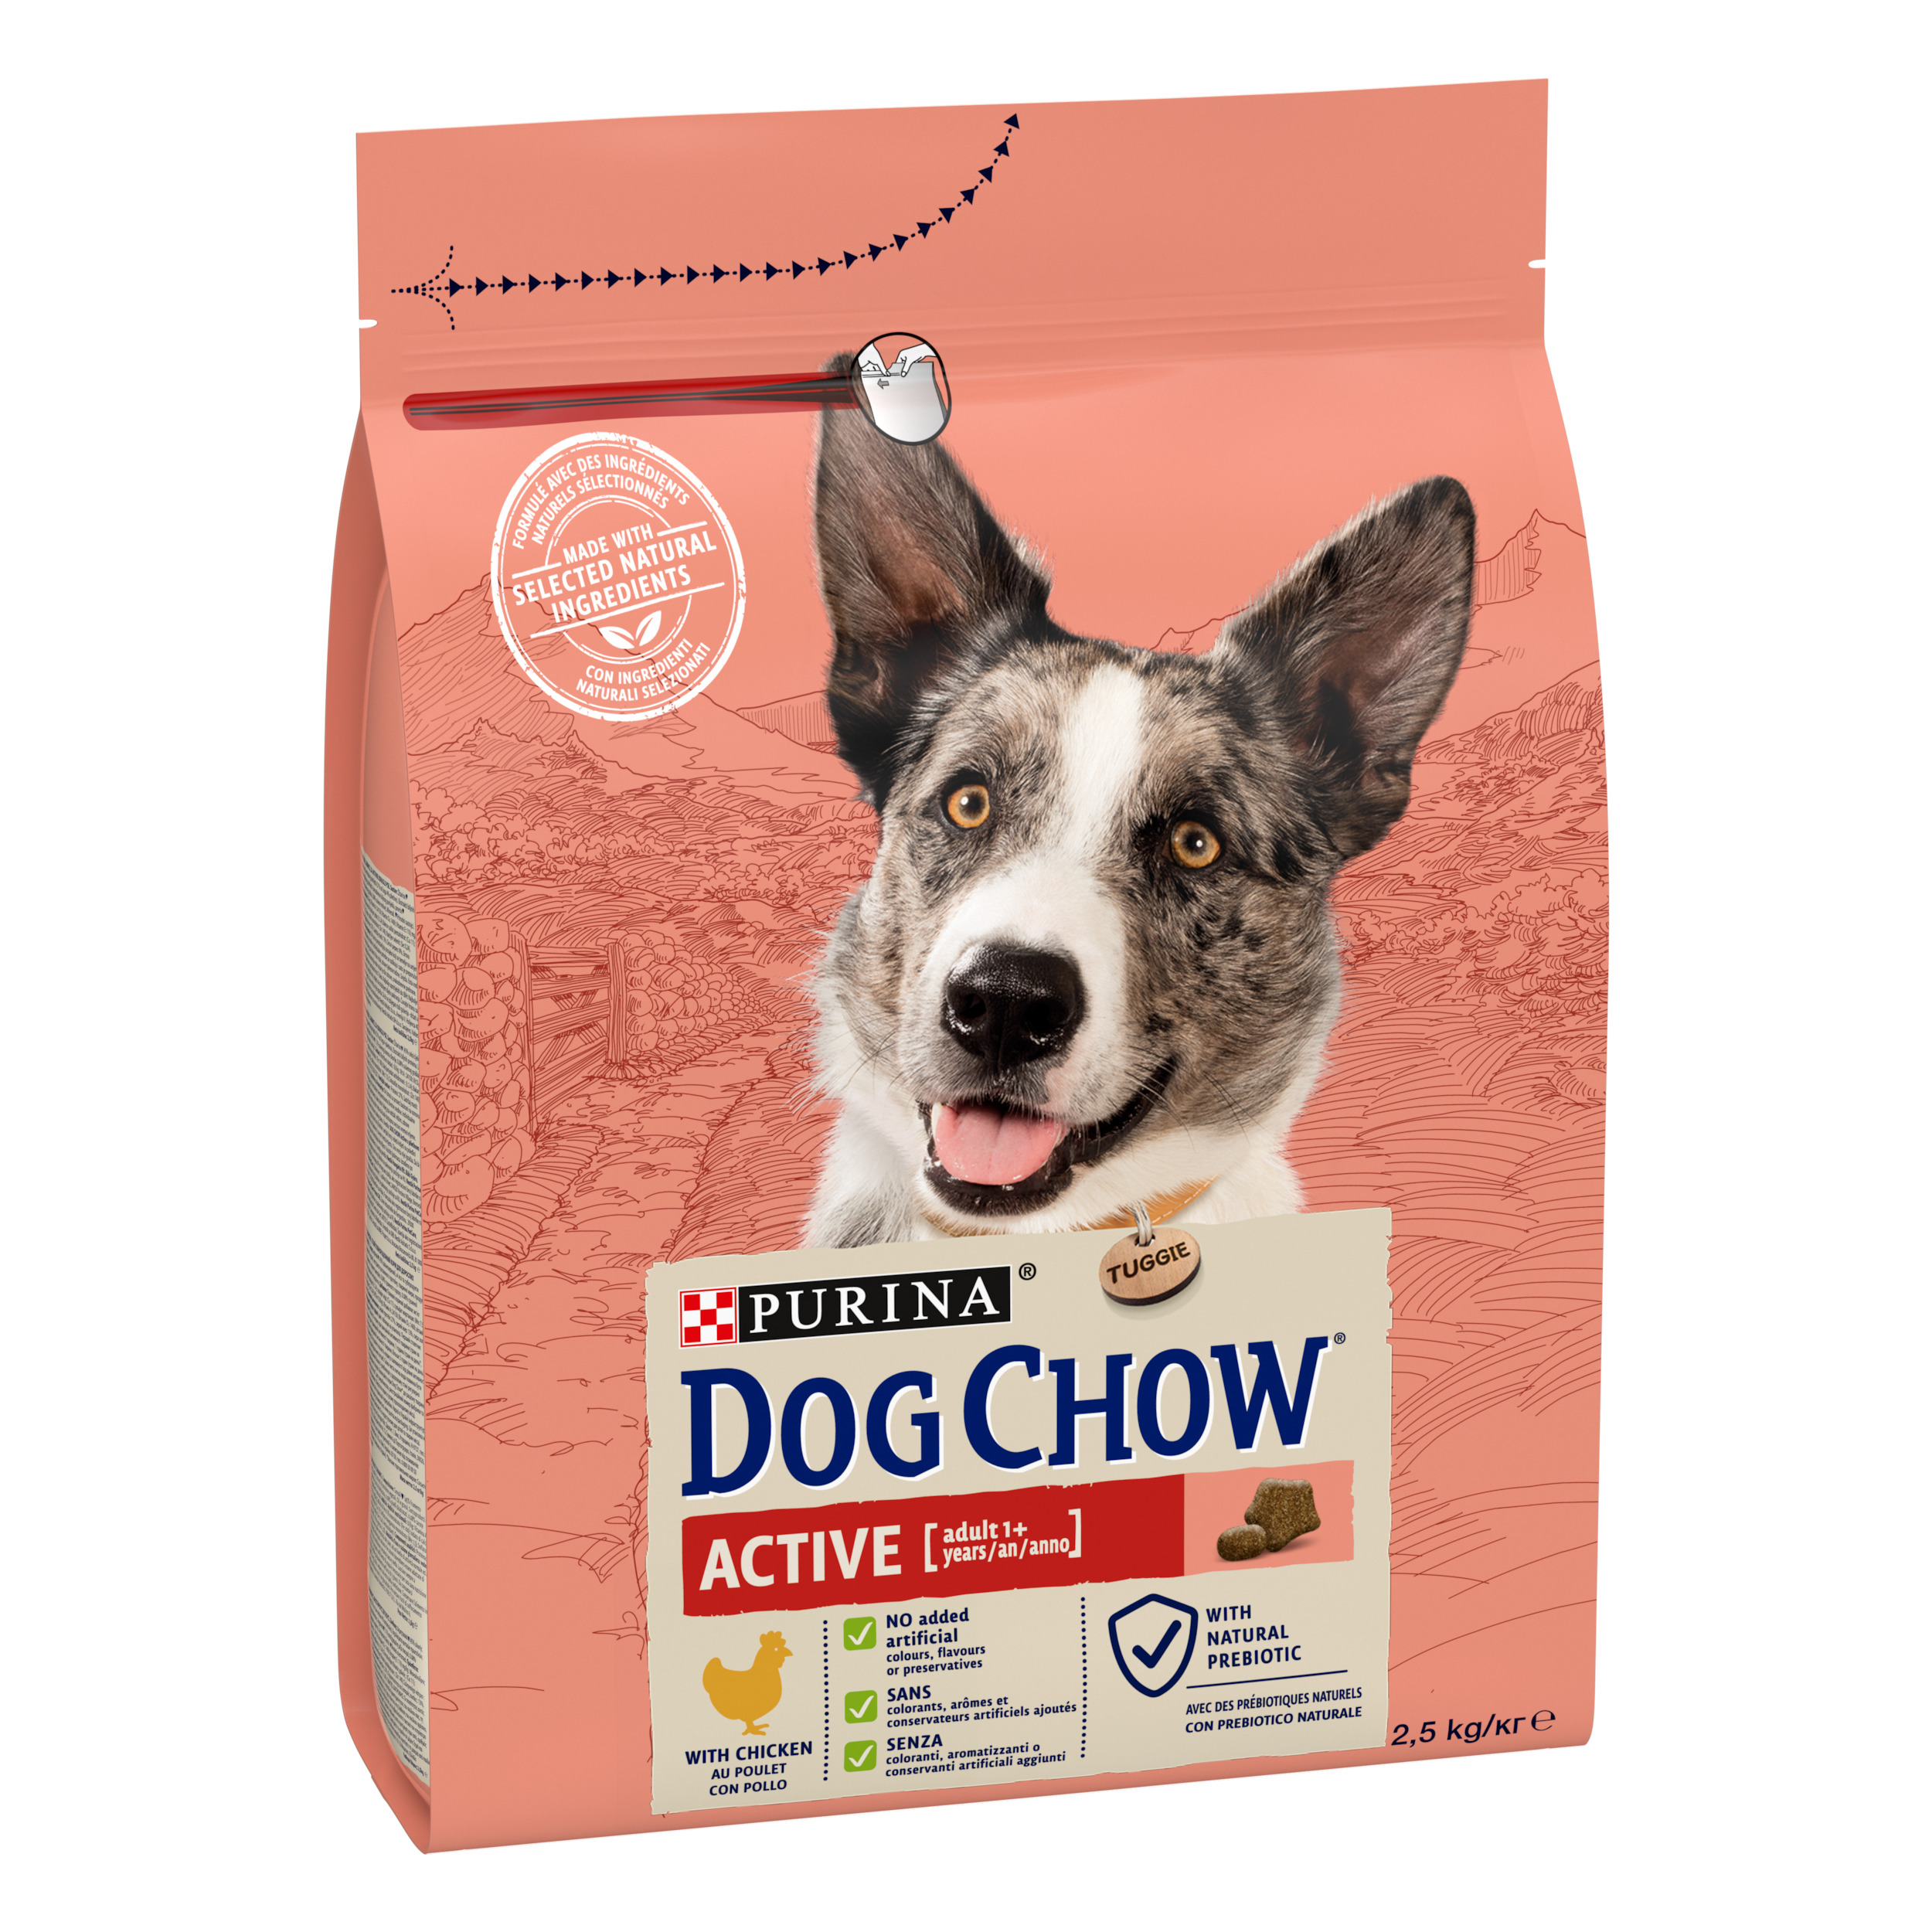 Сухой корм для собак с повышенной активностью Dog Chow Active Adult 1+, с курицей, 2,5 кг - фото 2